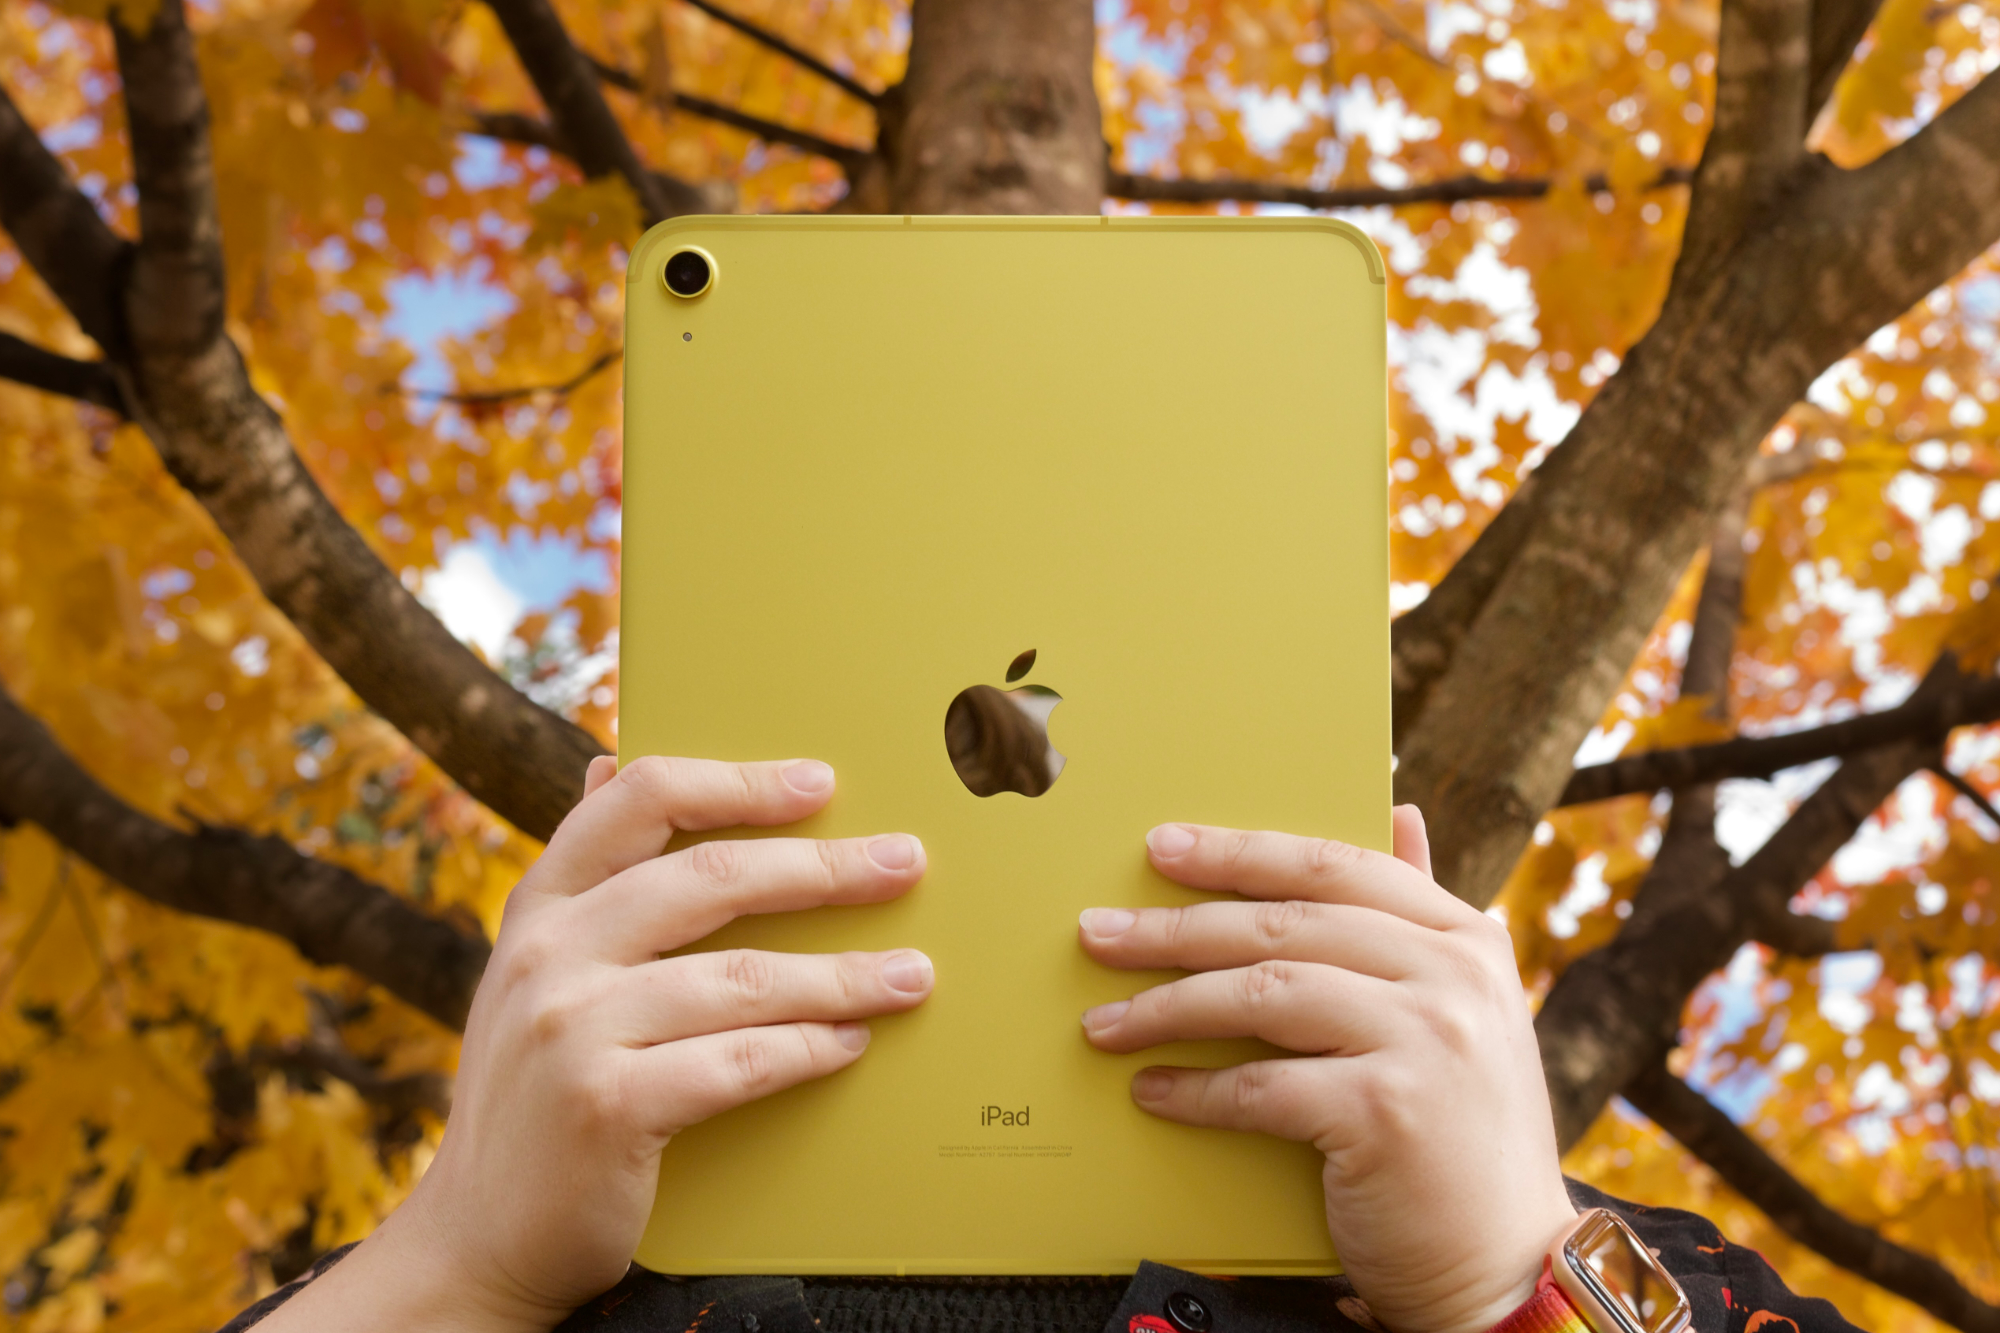 Alguém segurando o iPad amarelo (2022) na frente de árvores com folhas laranjas e amarelas.